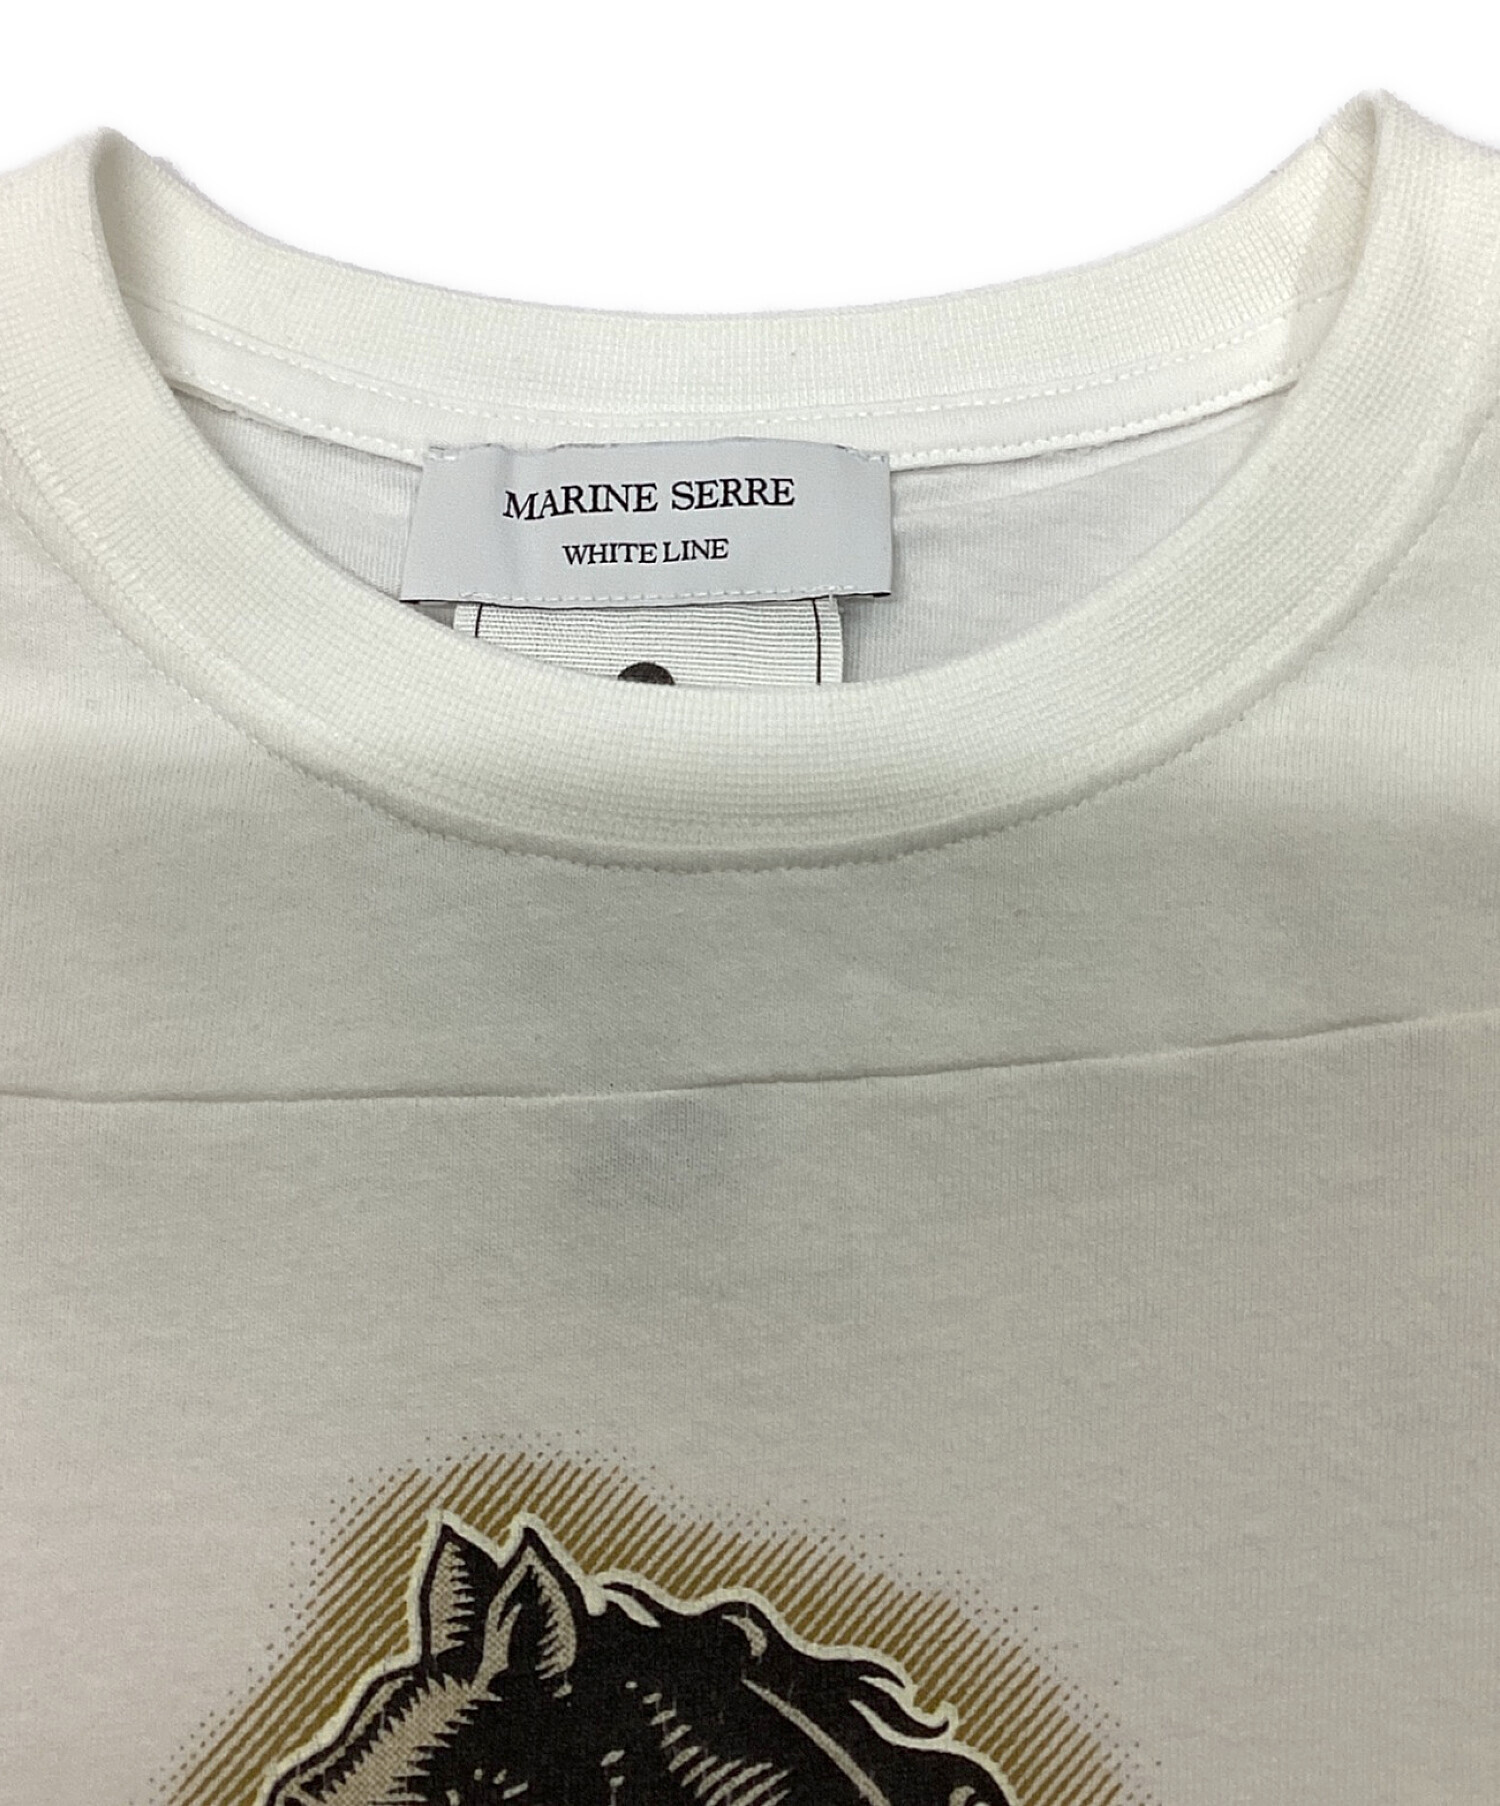 MARINE SERRE WHITE LINE (マリーンセル ホワイトライン) グラフィックプリントクルーネックTシャツ ホワイト×ベージュ  サイズ:S